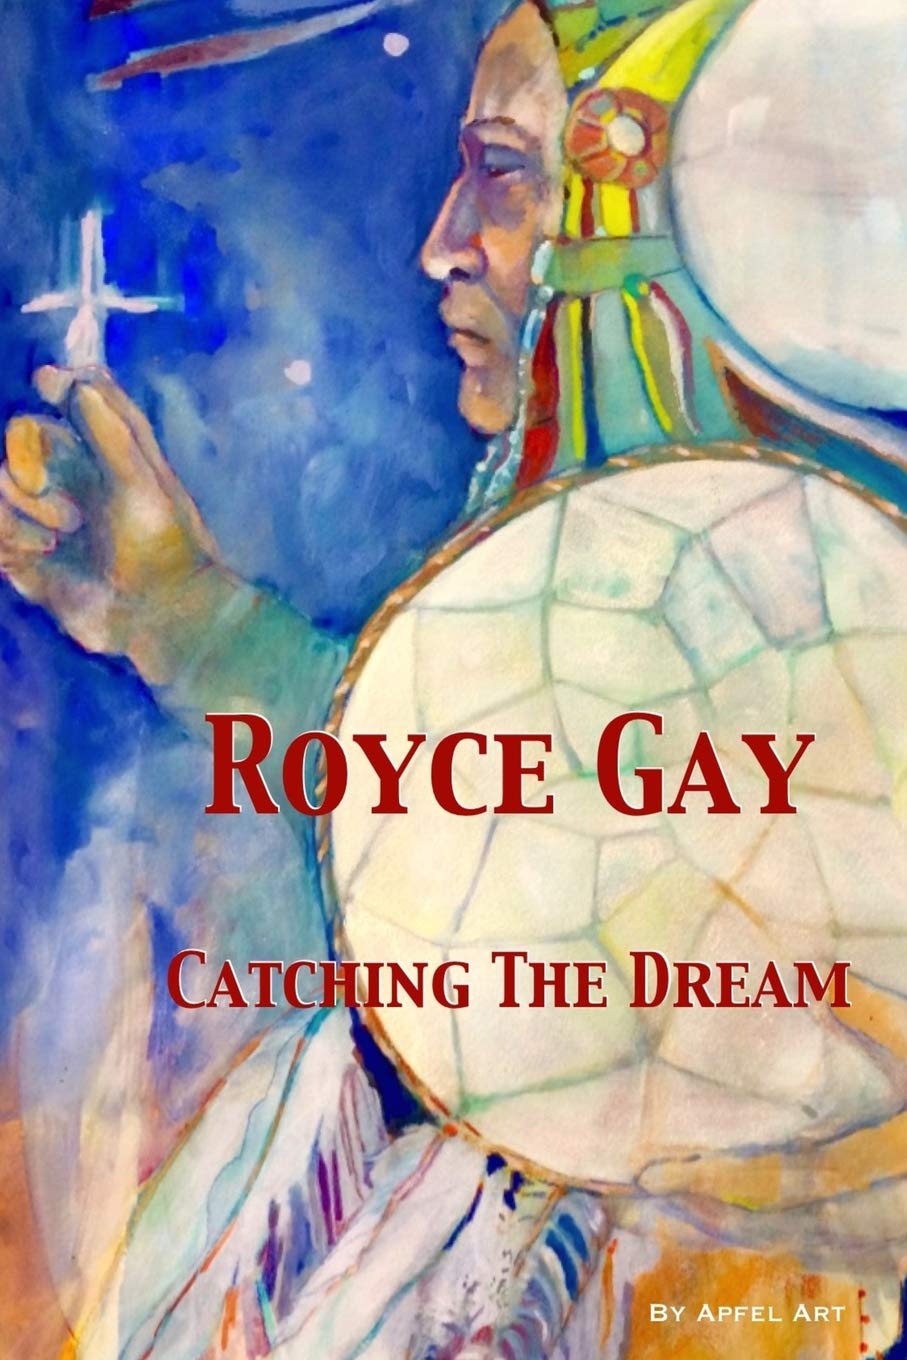 foto Royce gay